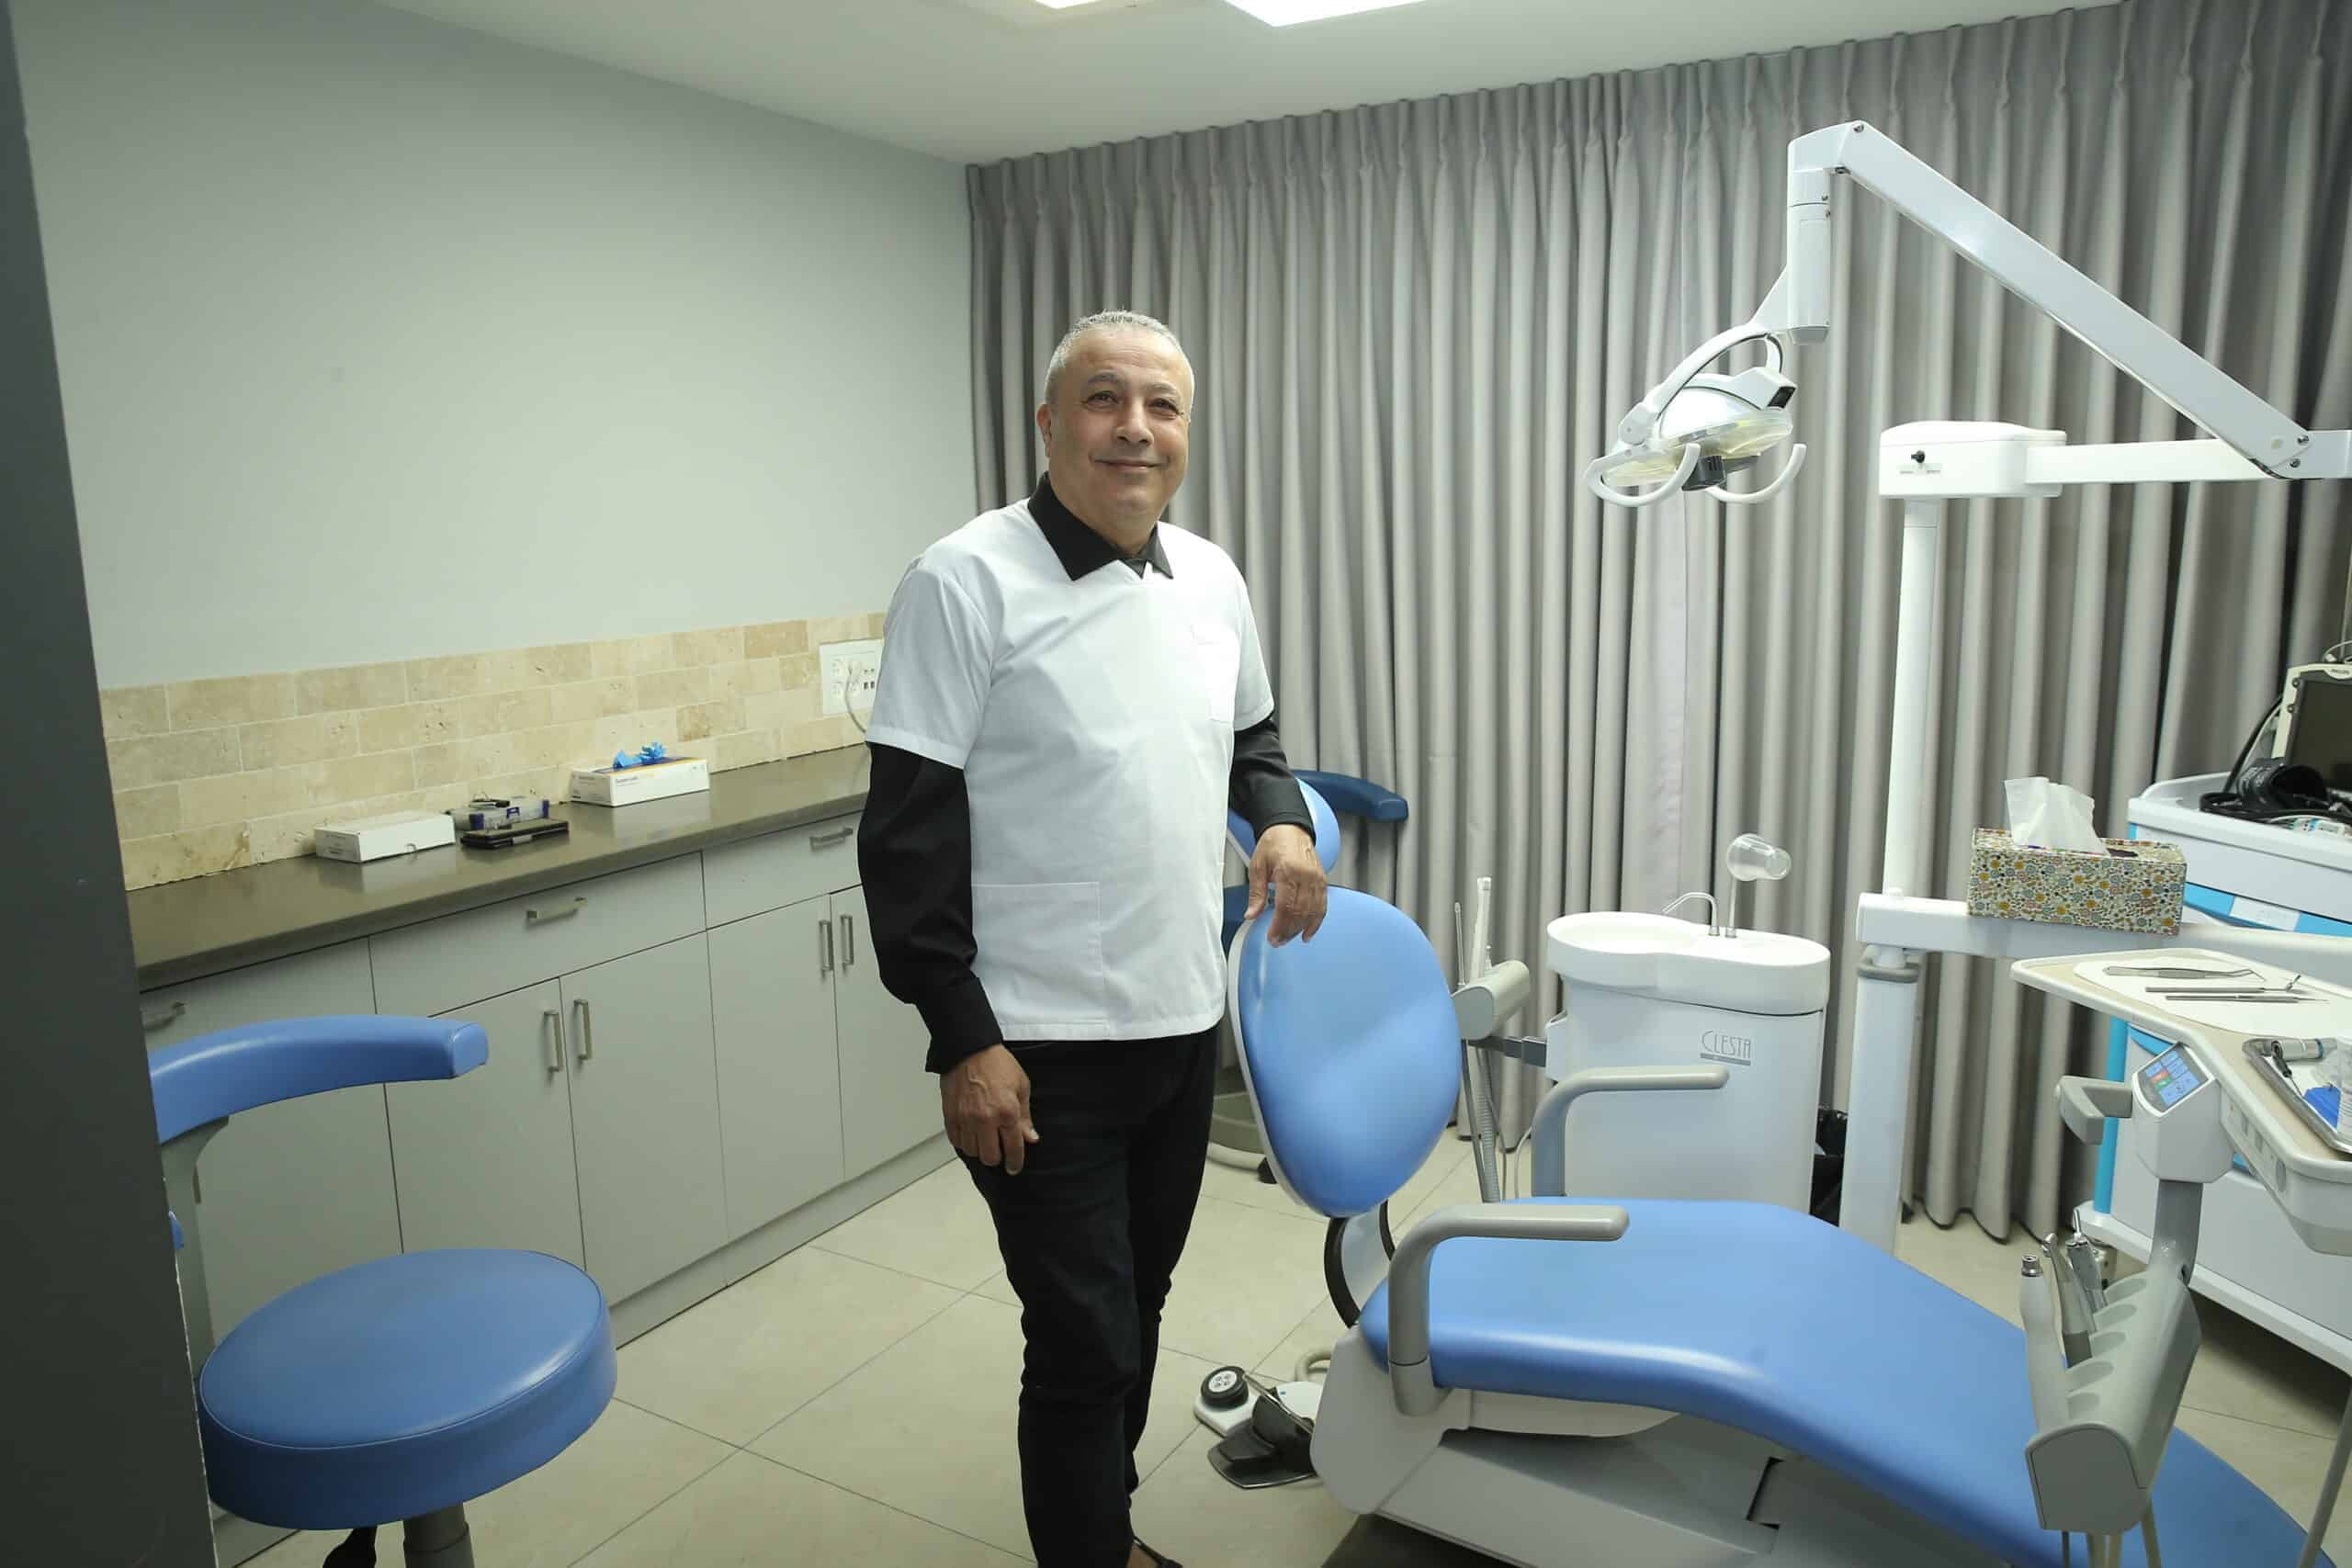 טיפולי שיניים אצל מומחים | מתמודדים עם החרדה הדנטלית בהצלחה